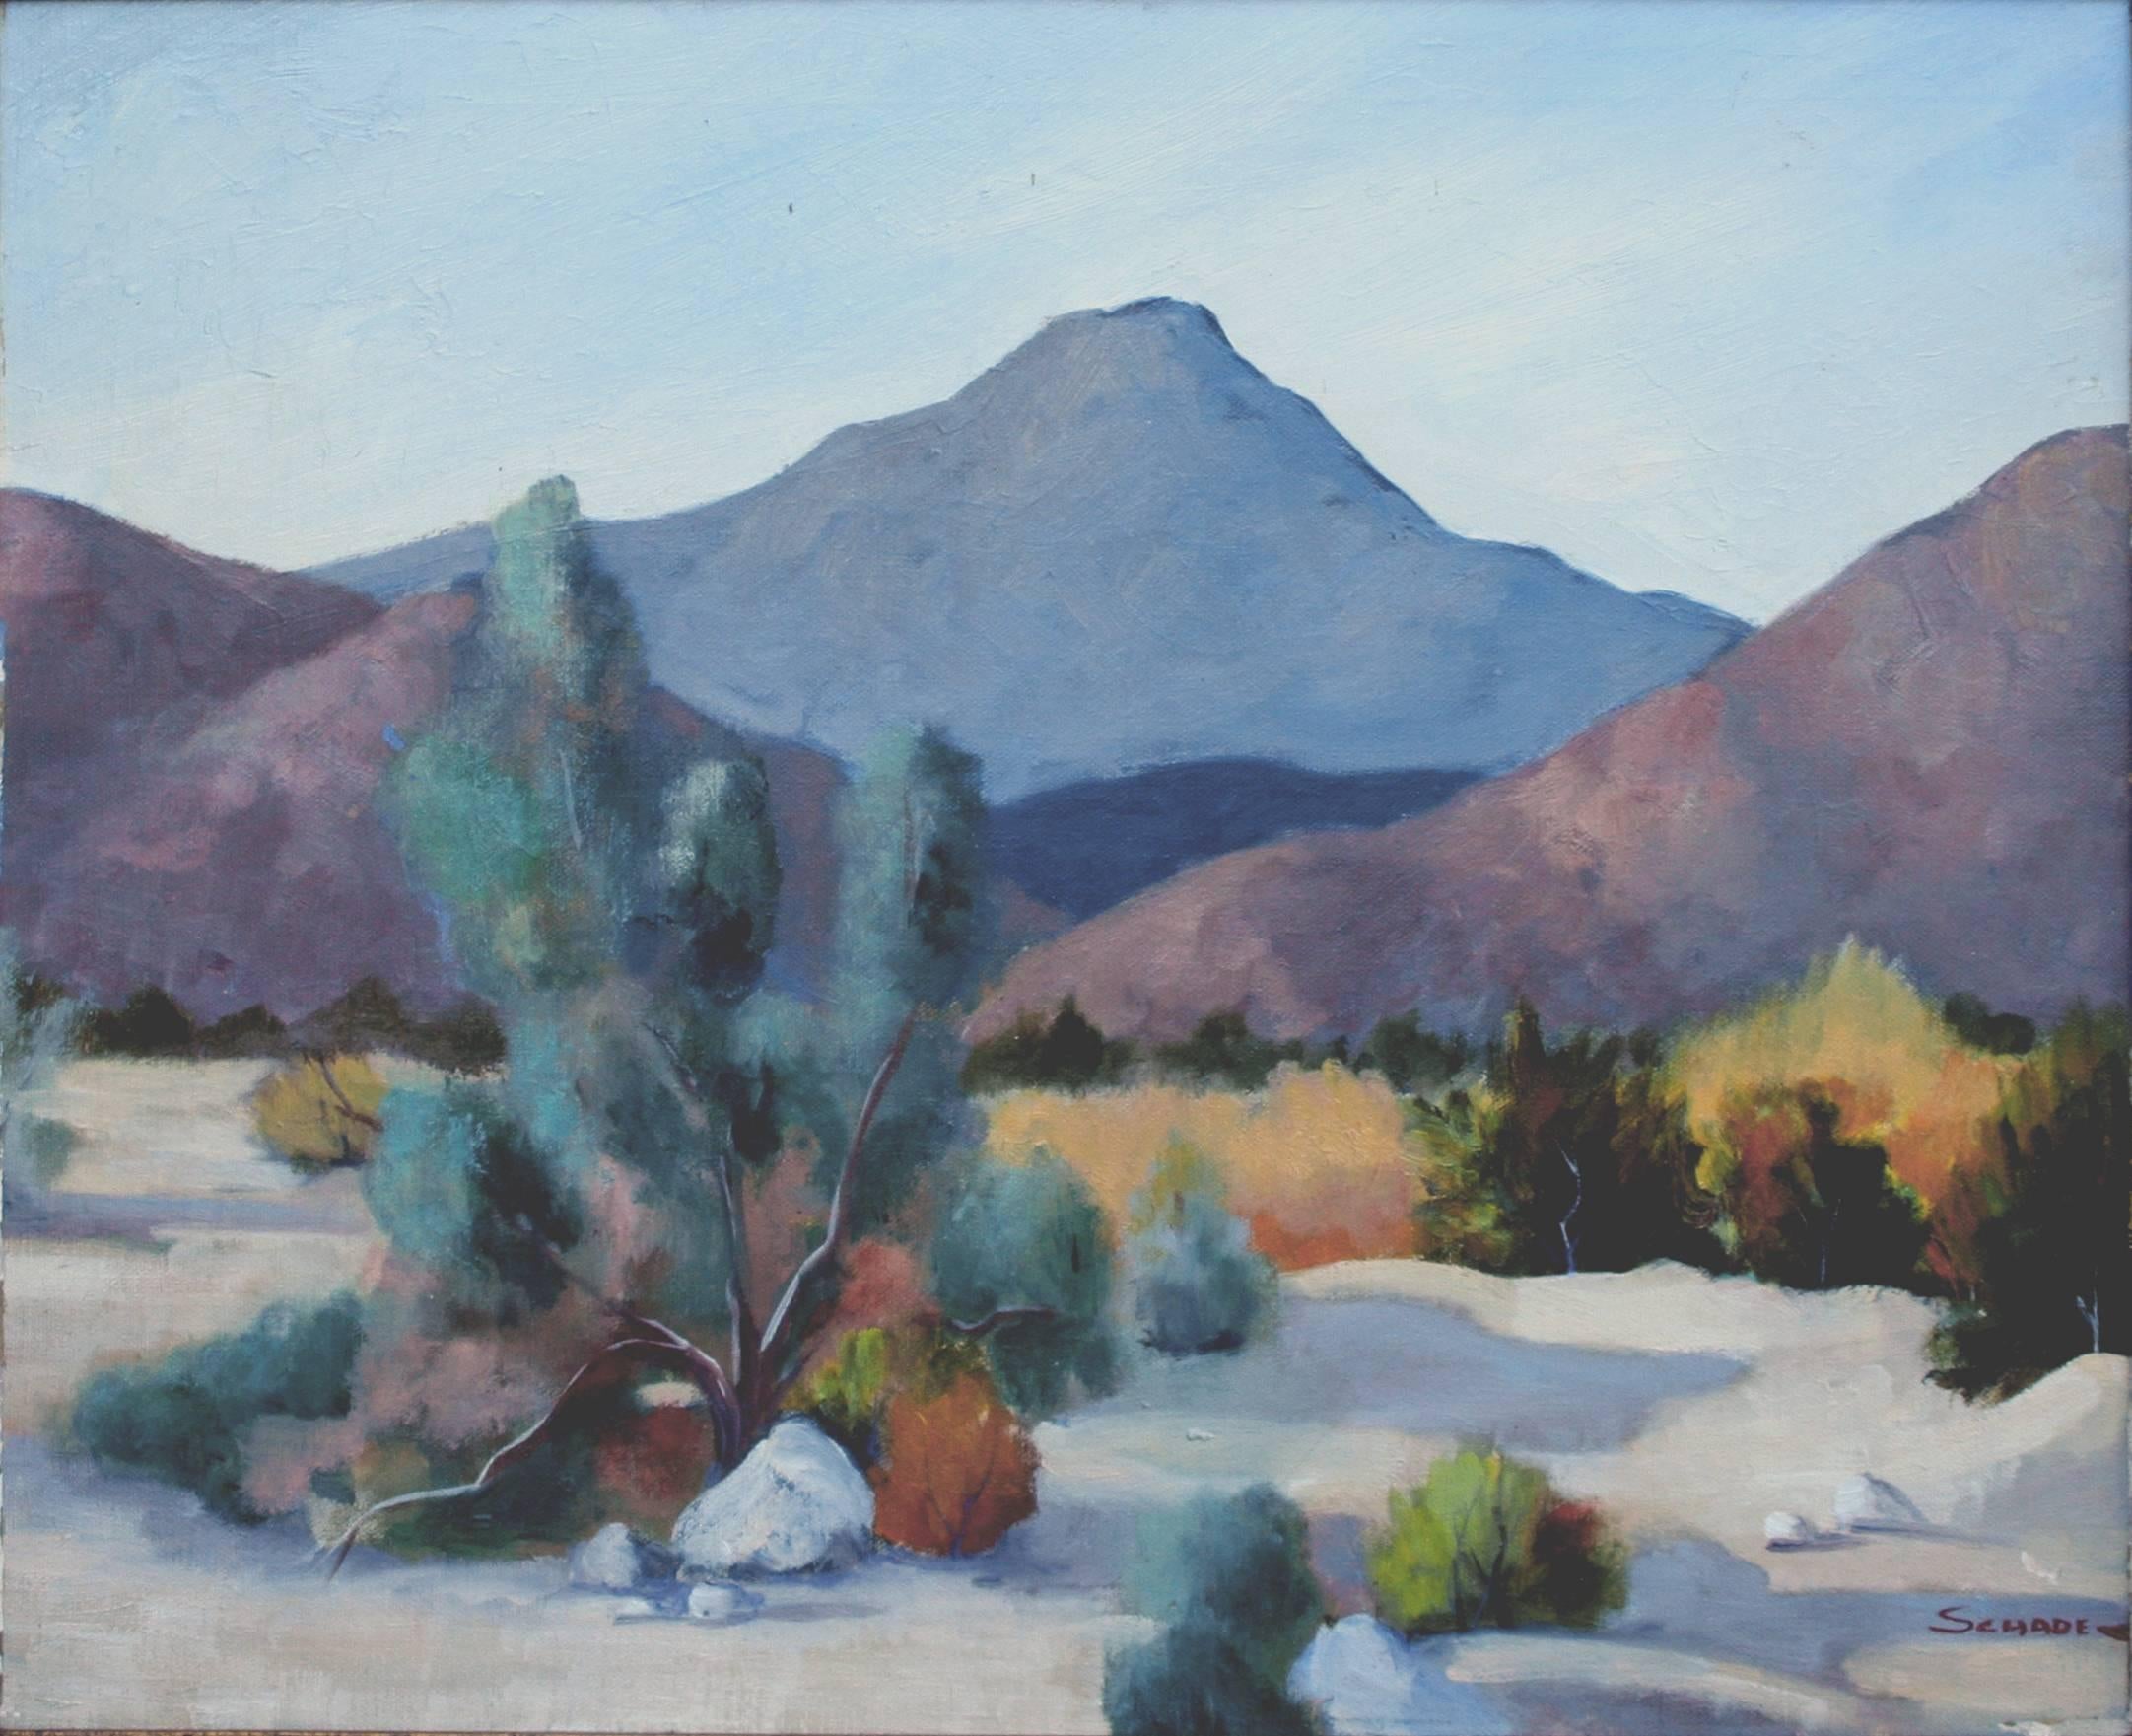 Desert Mountains - Painting by Lela Barrett Schade 